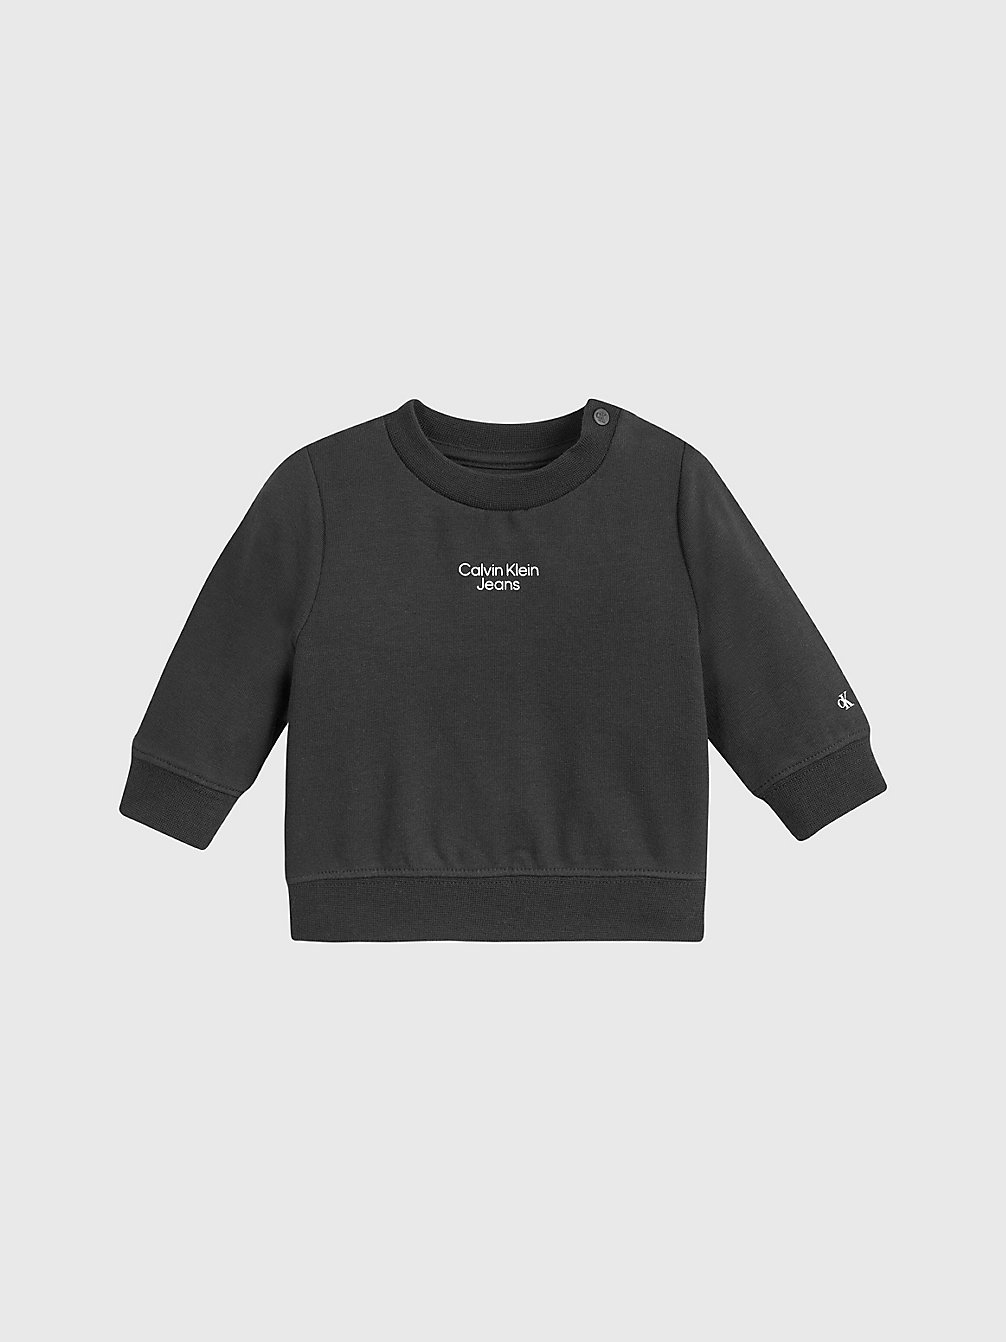 CK BLACK Newborn Organic Cotton Sweatshirt undefined newborn Calvin Klein